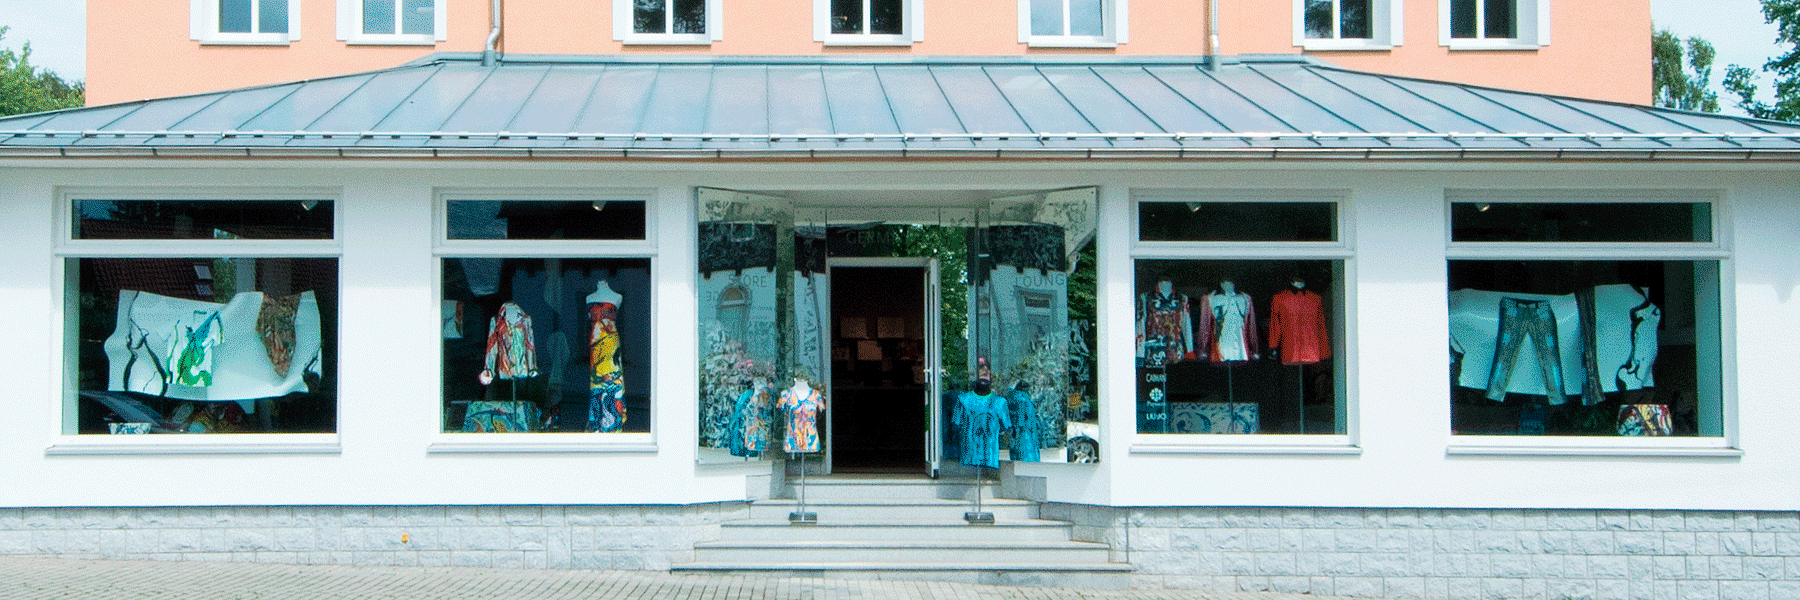 GERMENS Store in Chemnitz Rabenstein - Wir freuen uns auf Ihren Besuch!